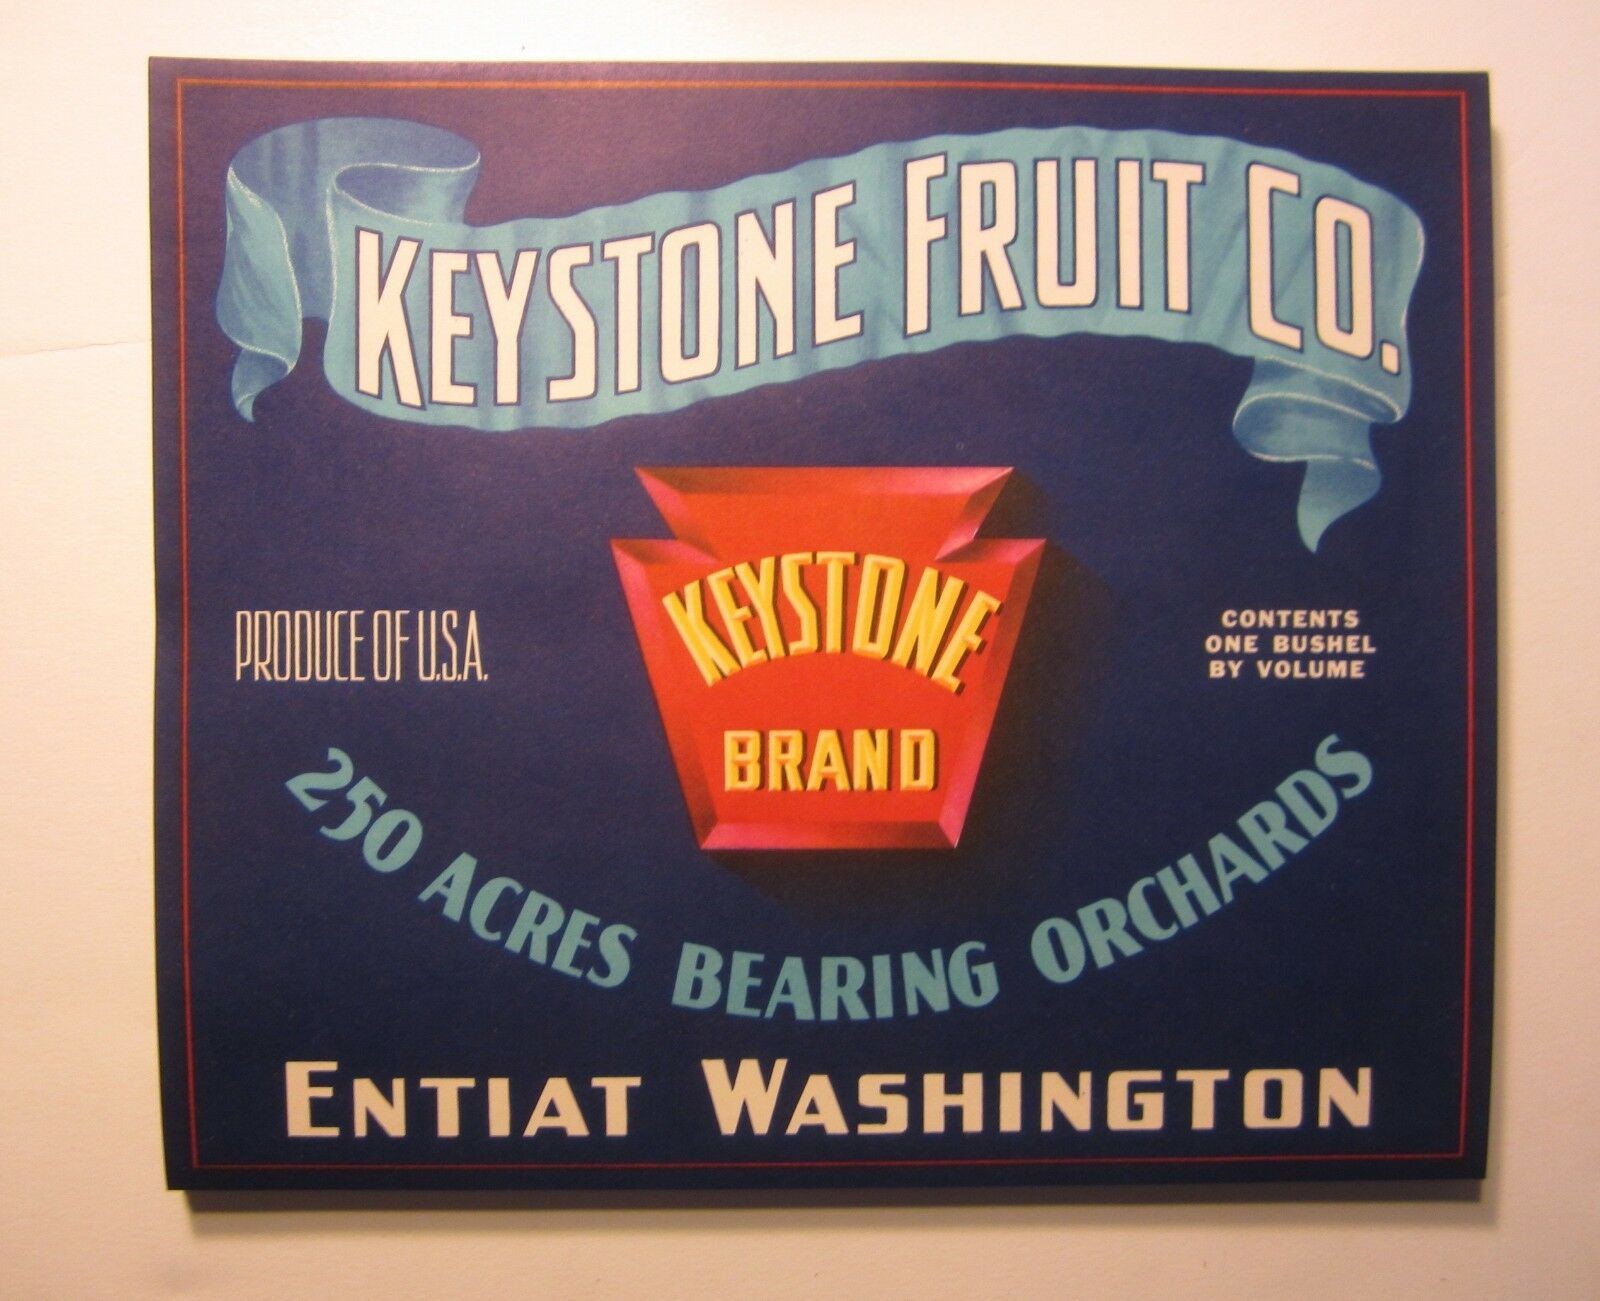  Lot of 100 Old Vintage KEYSTONE FRUIT CO. Crat...